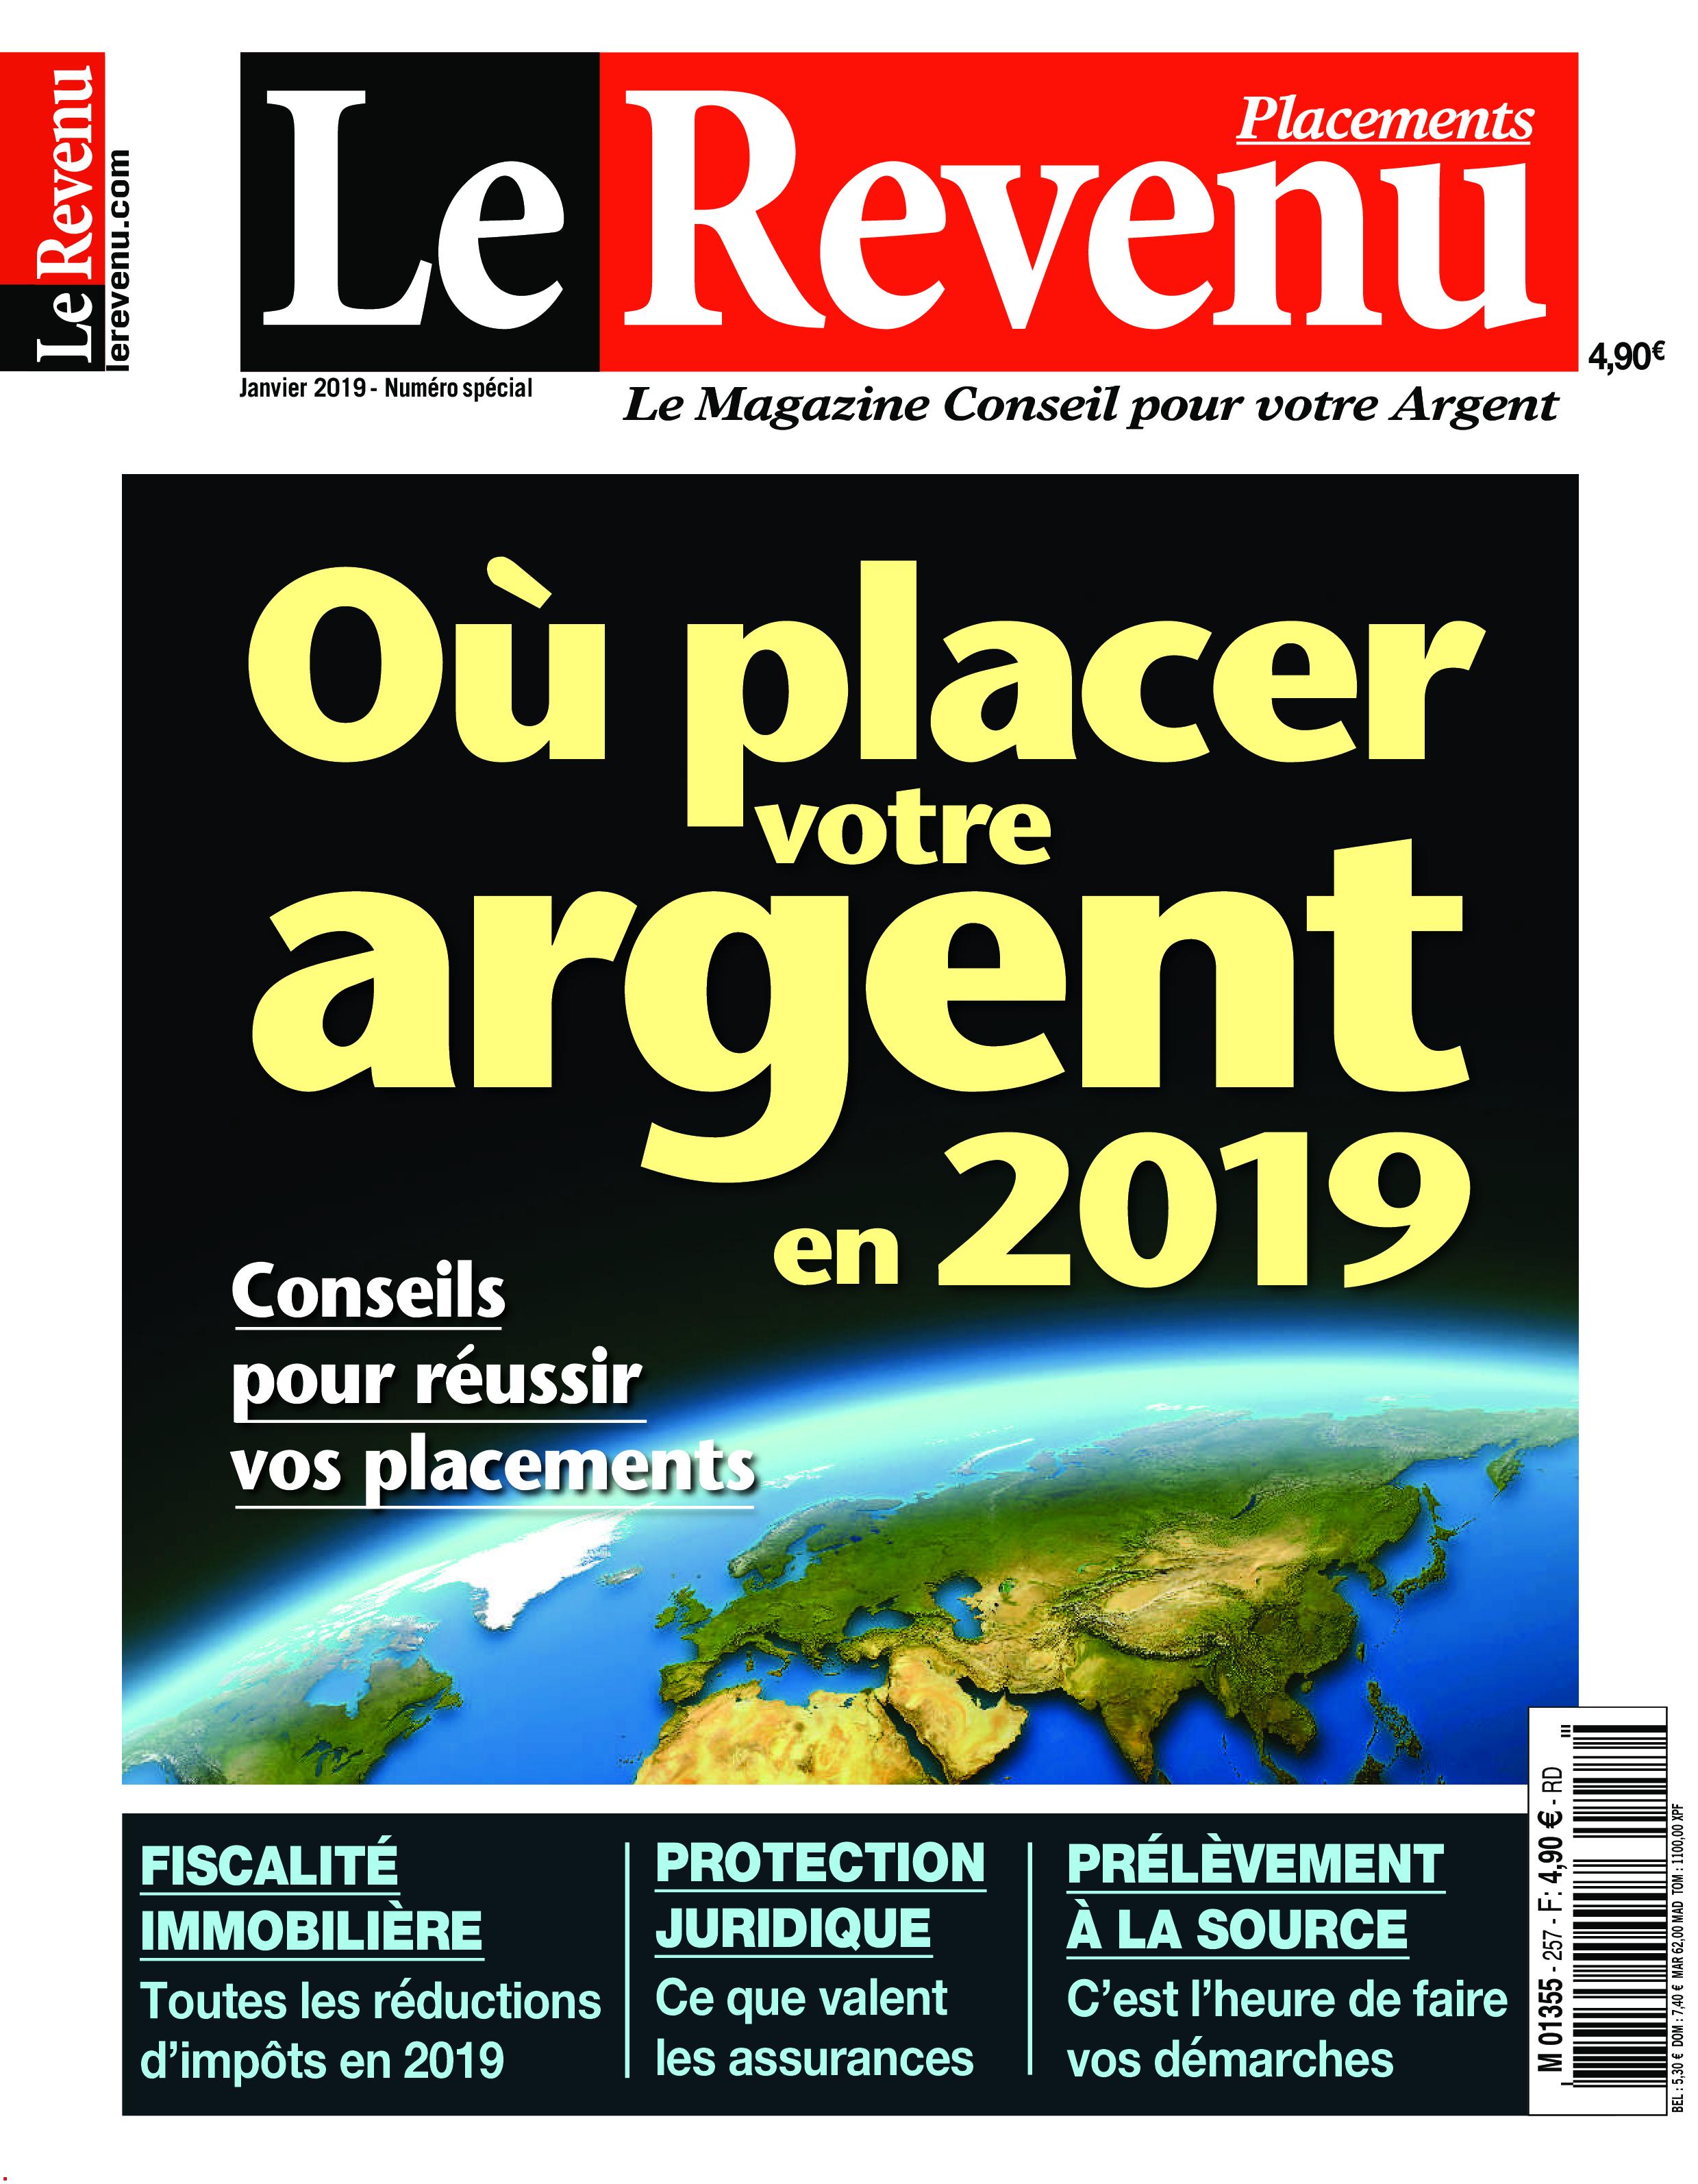 Le Revenu Placements - janvier 2019